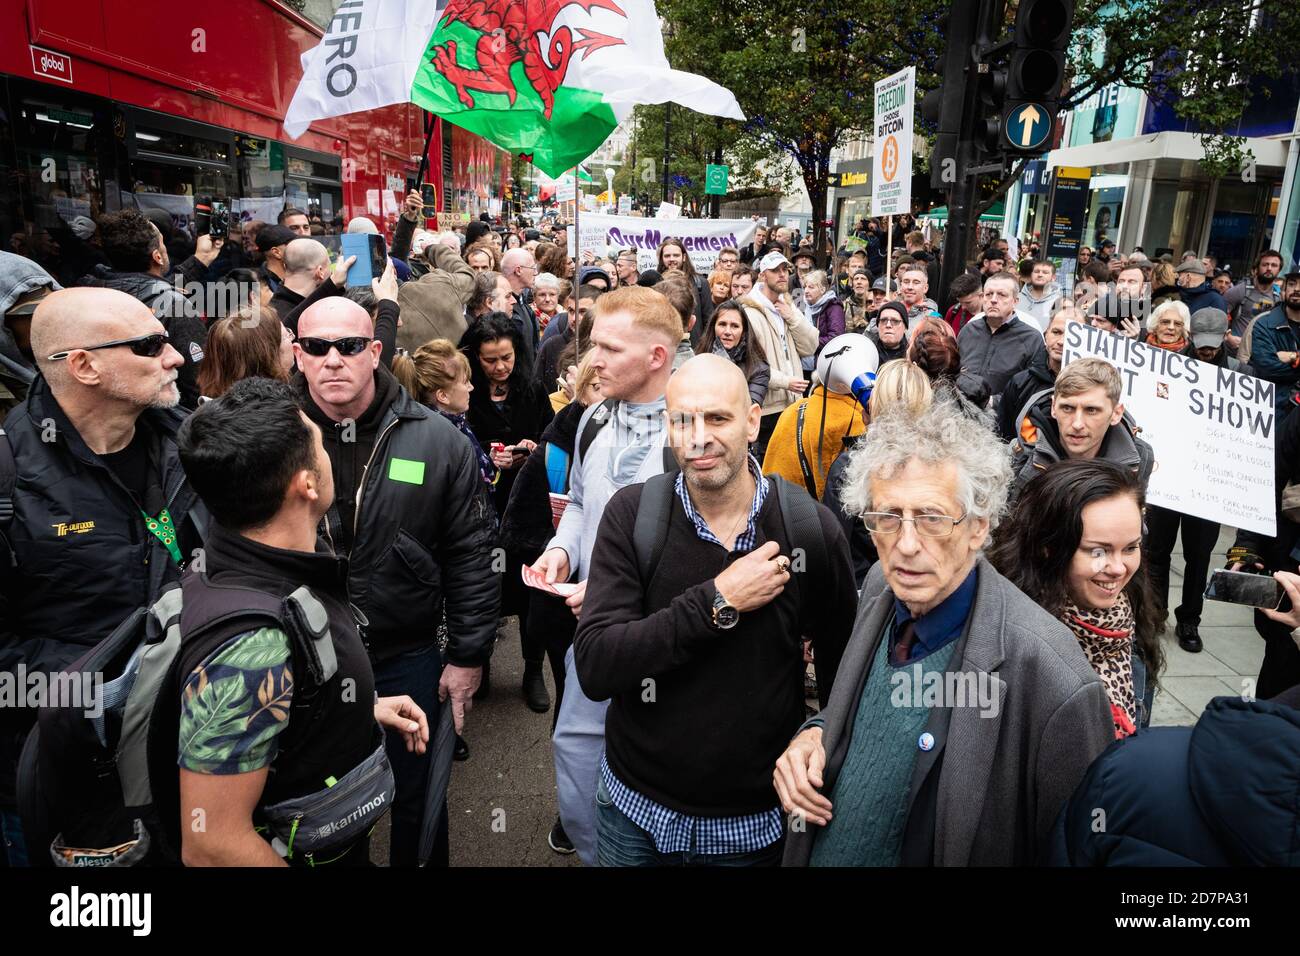 Piers Corbyn prendono parte durante la manifestazione.Unite per il movimento di libertà ha organizzato una protesta sotto la bandiera, abbiamo il potere, per mostrare alle forze che, non acconsentono in ciò che vedono come un blocco illegale. Foto Stock